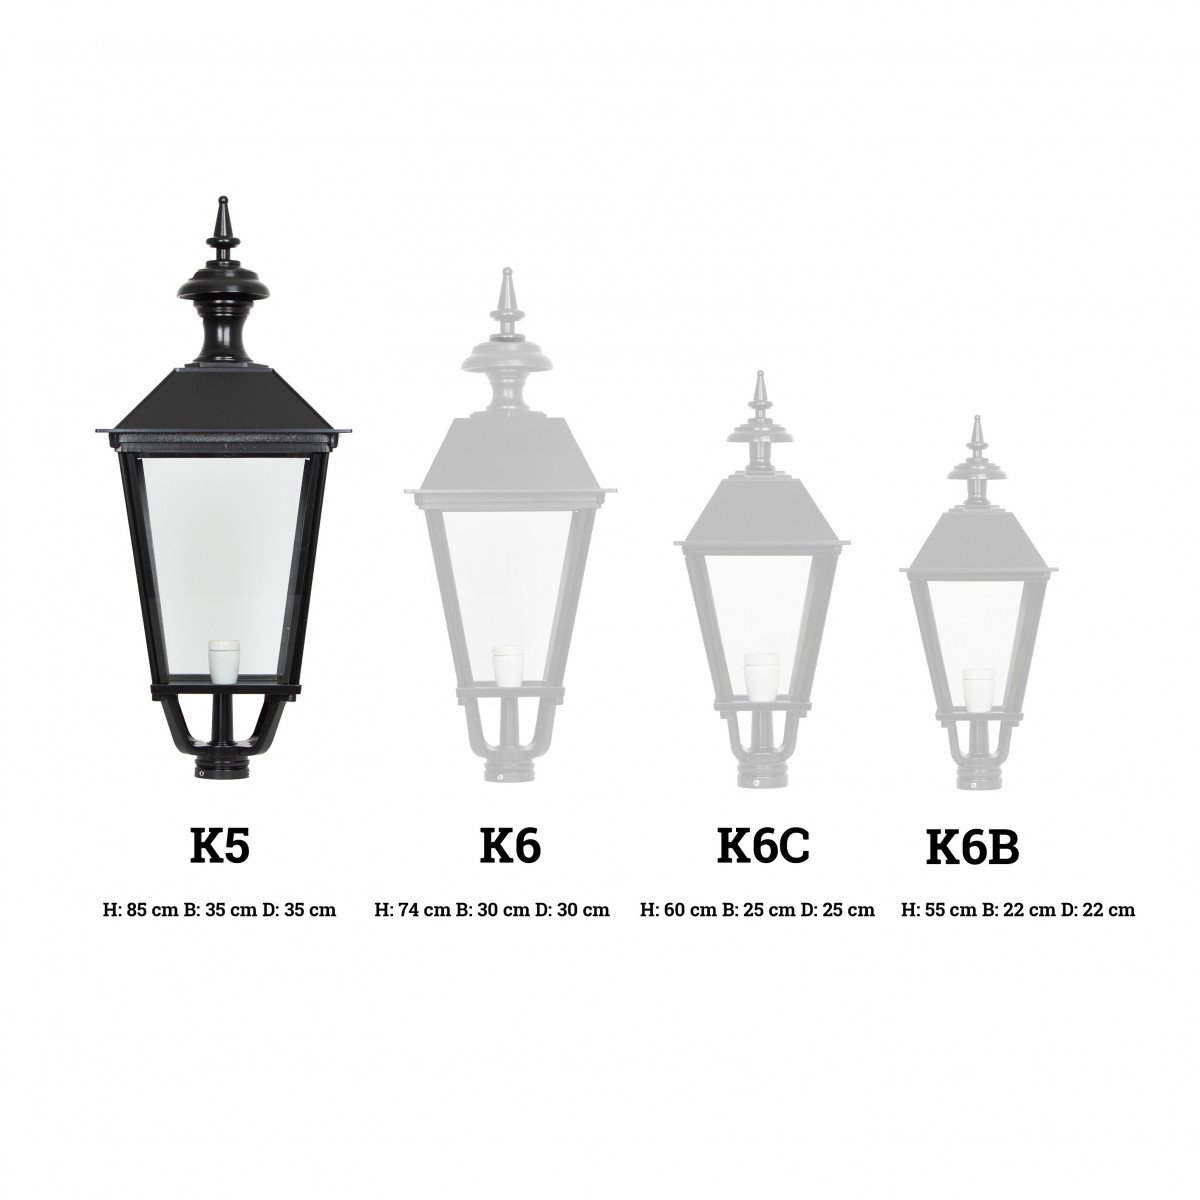 Lanterne carrée K5 (1410) éclairage d'extérieur de KS Lighting